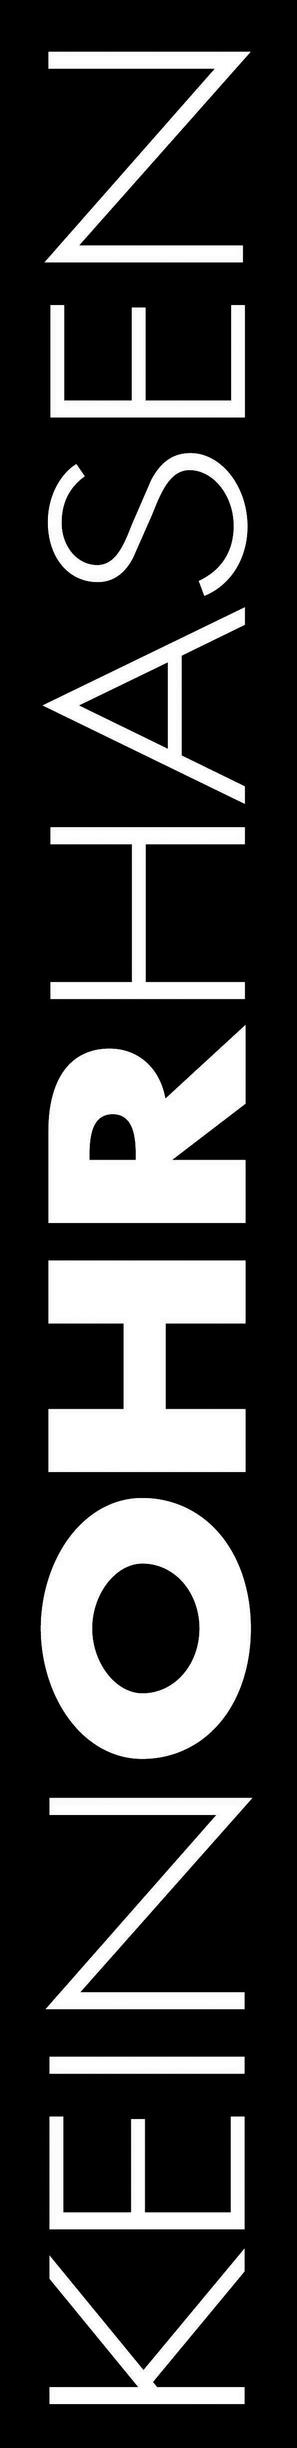 Keinohrhasen - Swiss Logo (thumbnail)